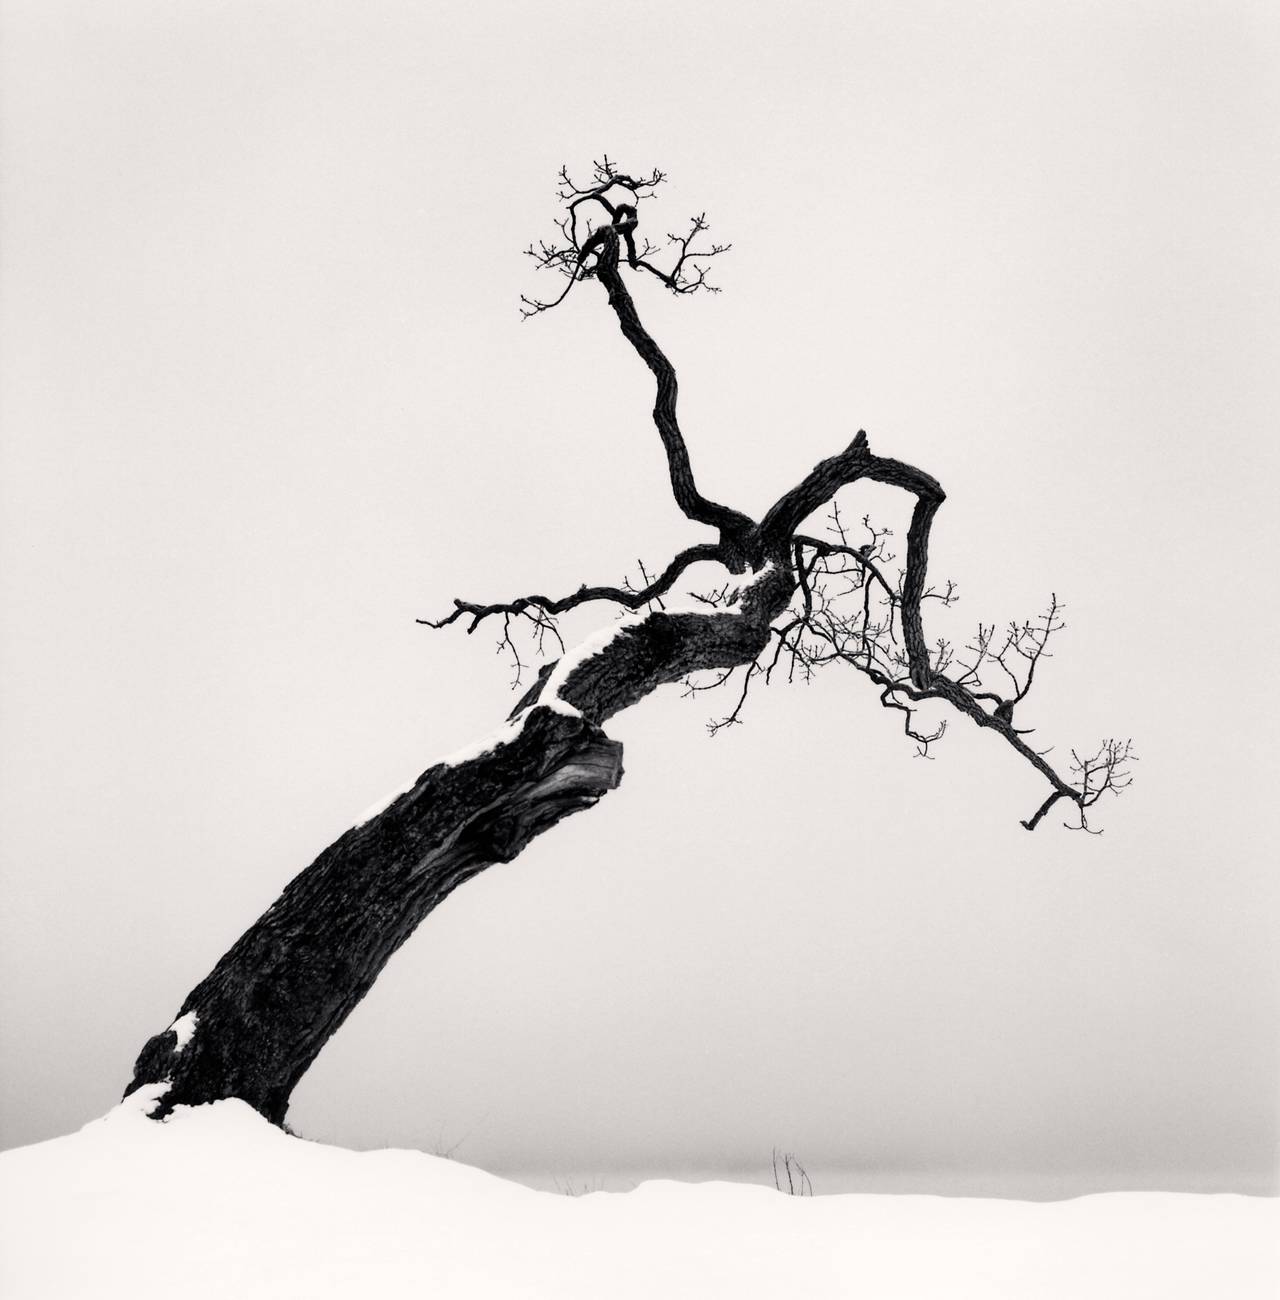 Michael Kenna Black and White Photograph – Kussharo Seebaum, Studie 4, Kotan, Hokkaido